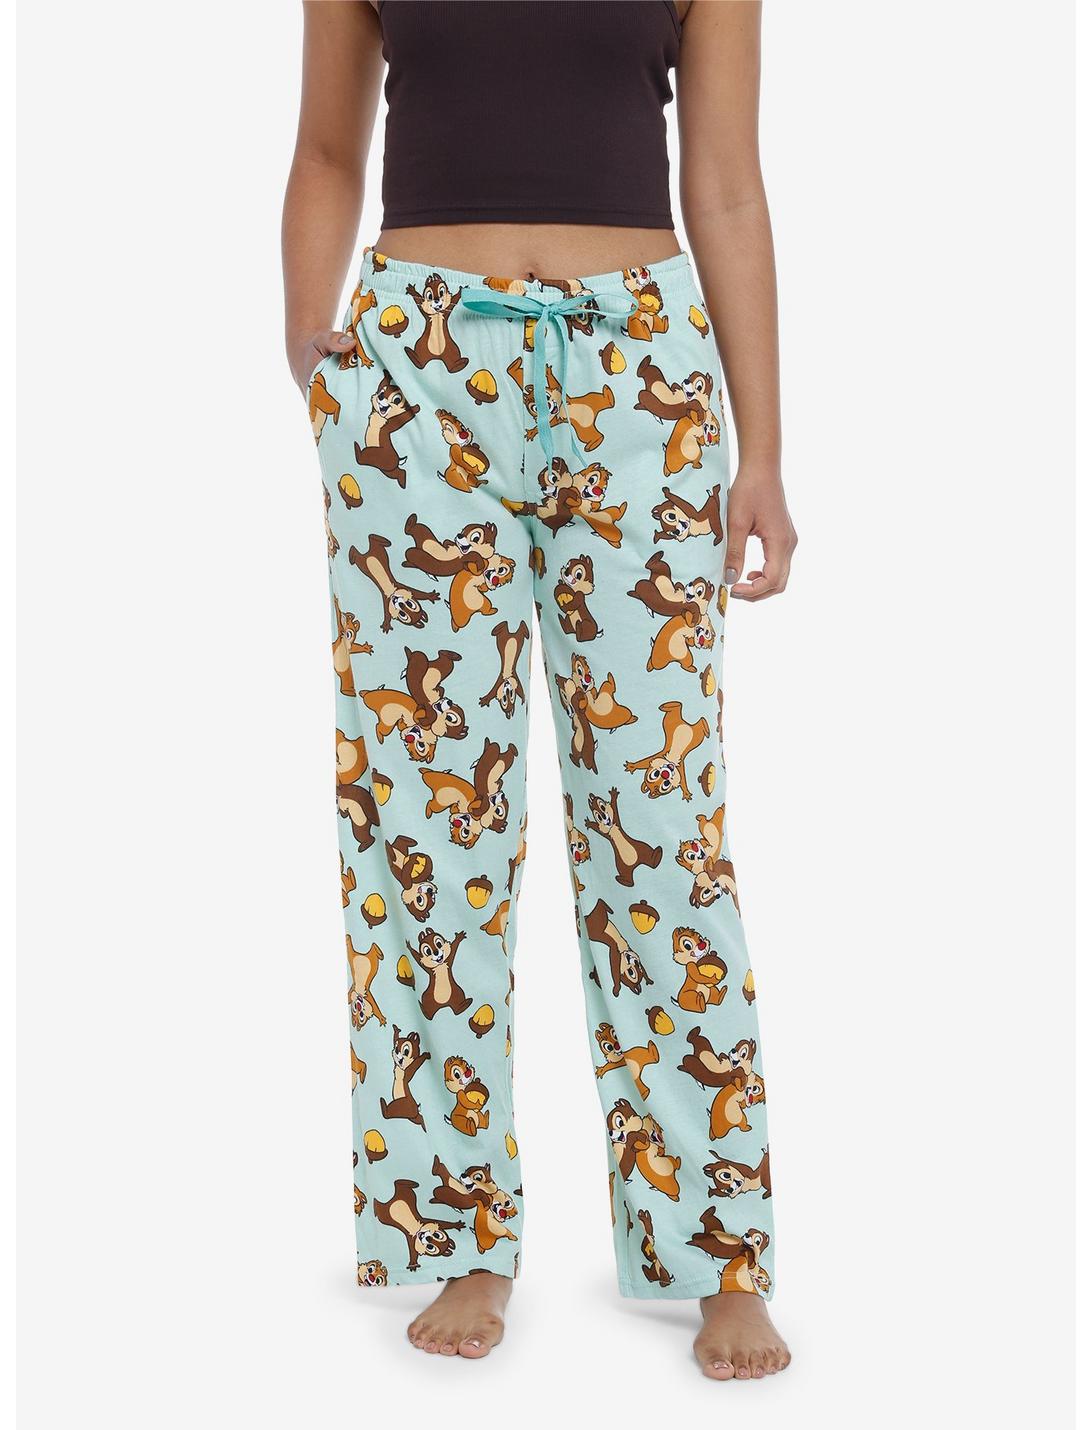 Disney Chip 'N' Dale Allover Print Pajama Pants, MULTI, hi-res